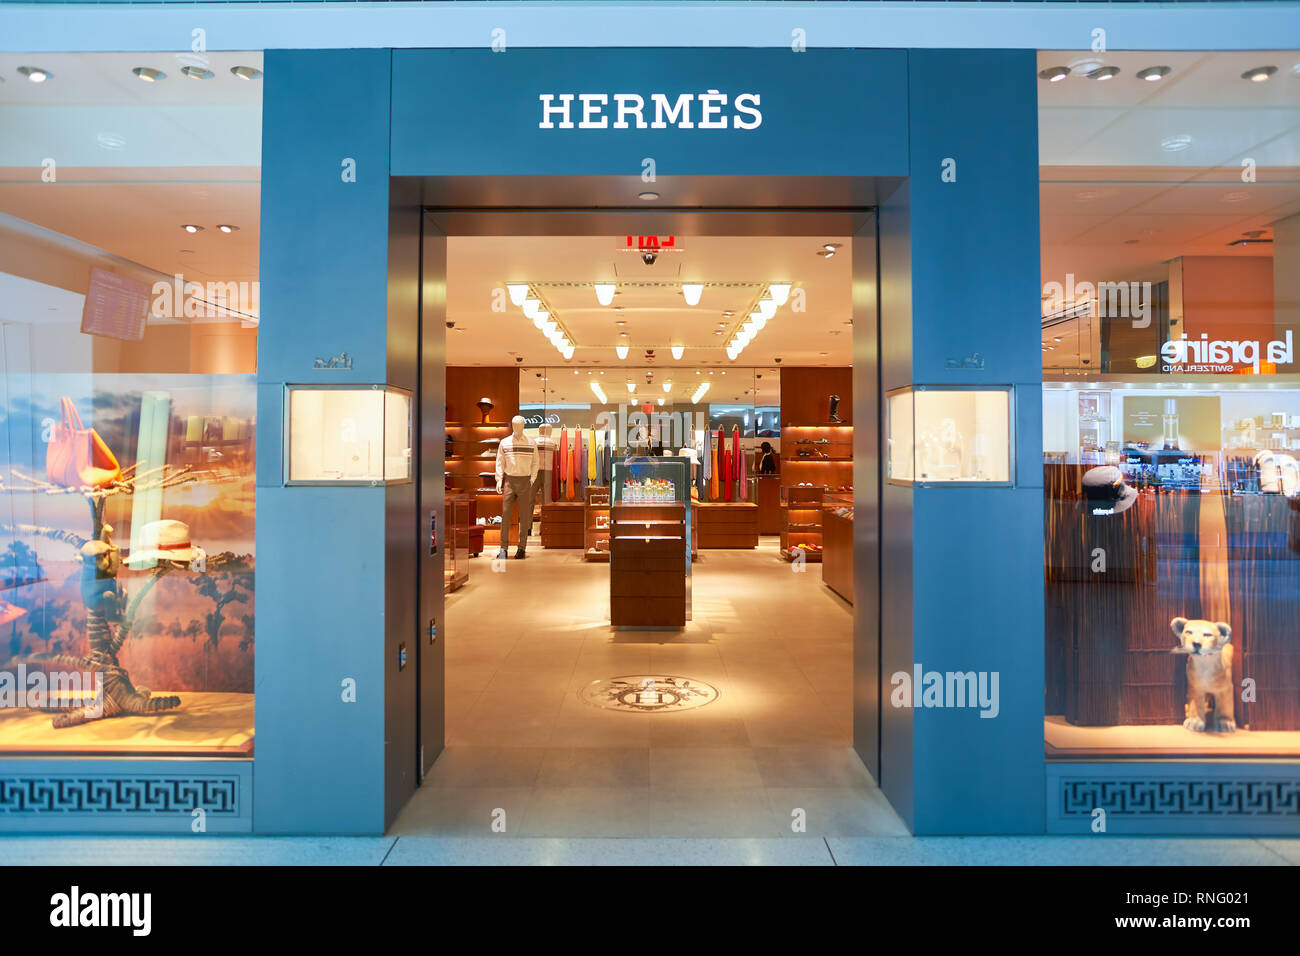 hermes shop usa